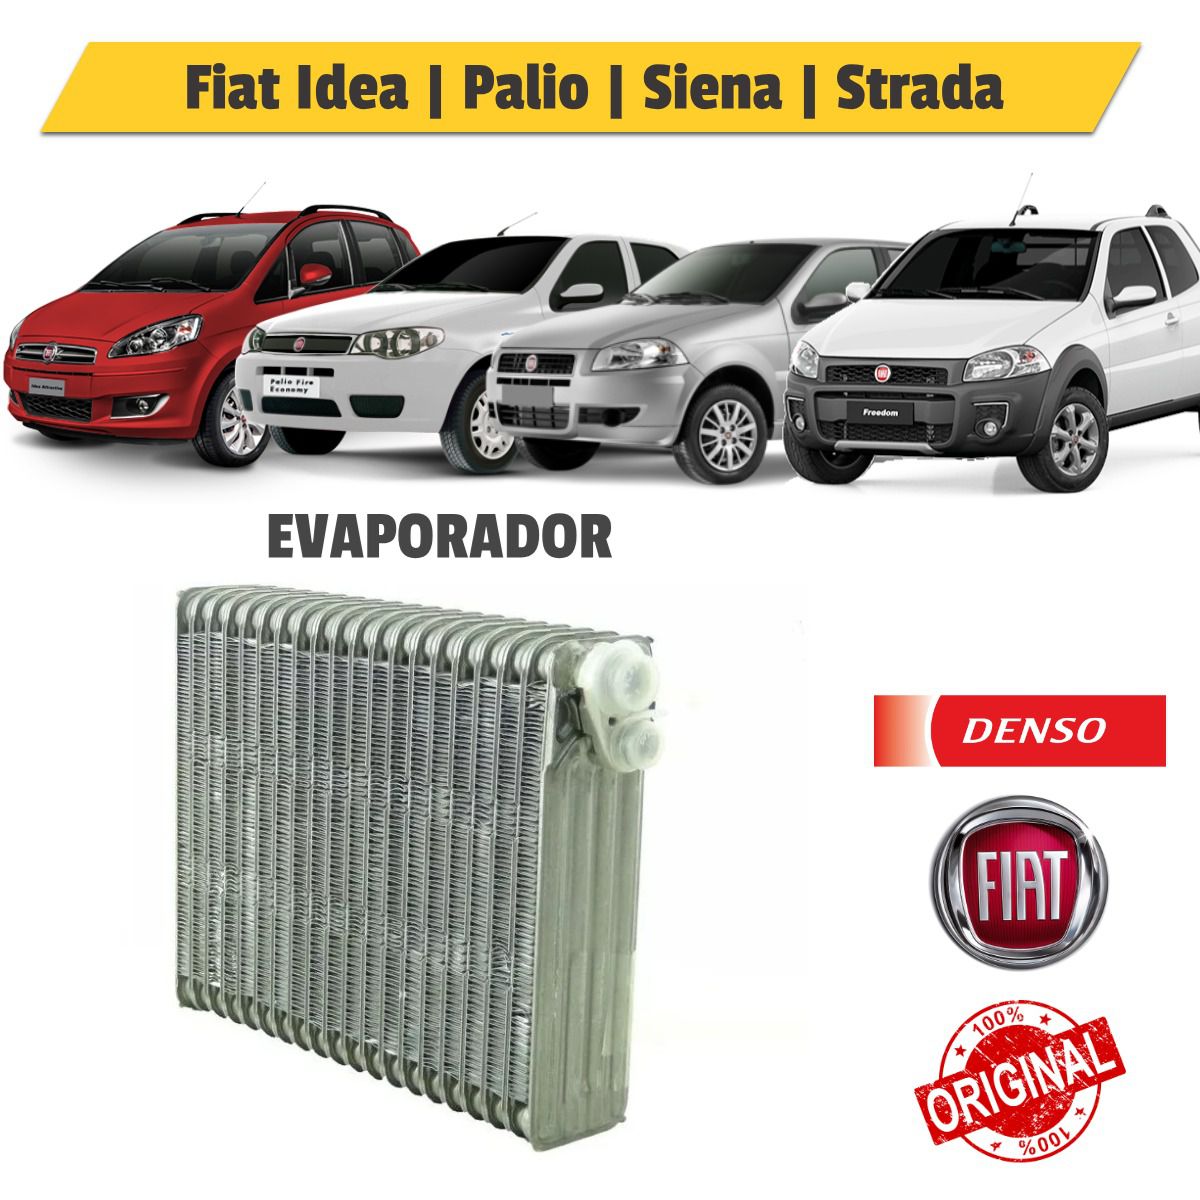 Evaporador Fiat Palio Fire, Siena, Strada - Denso